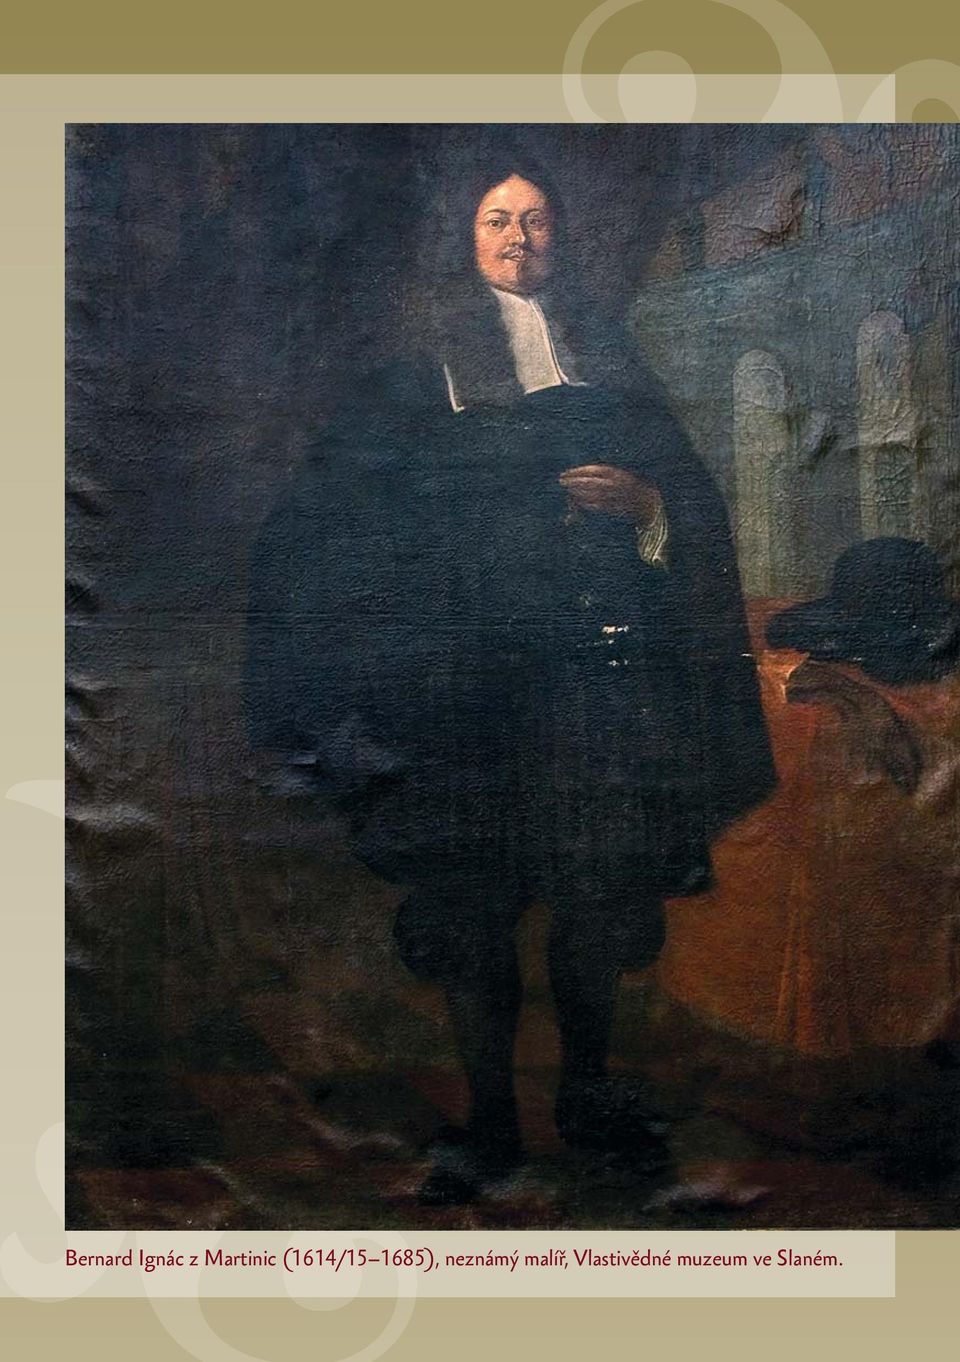 1685), neznámý malíř,